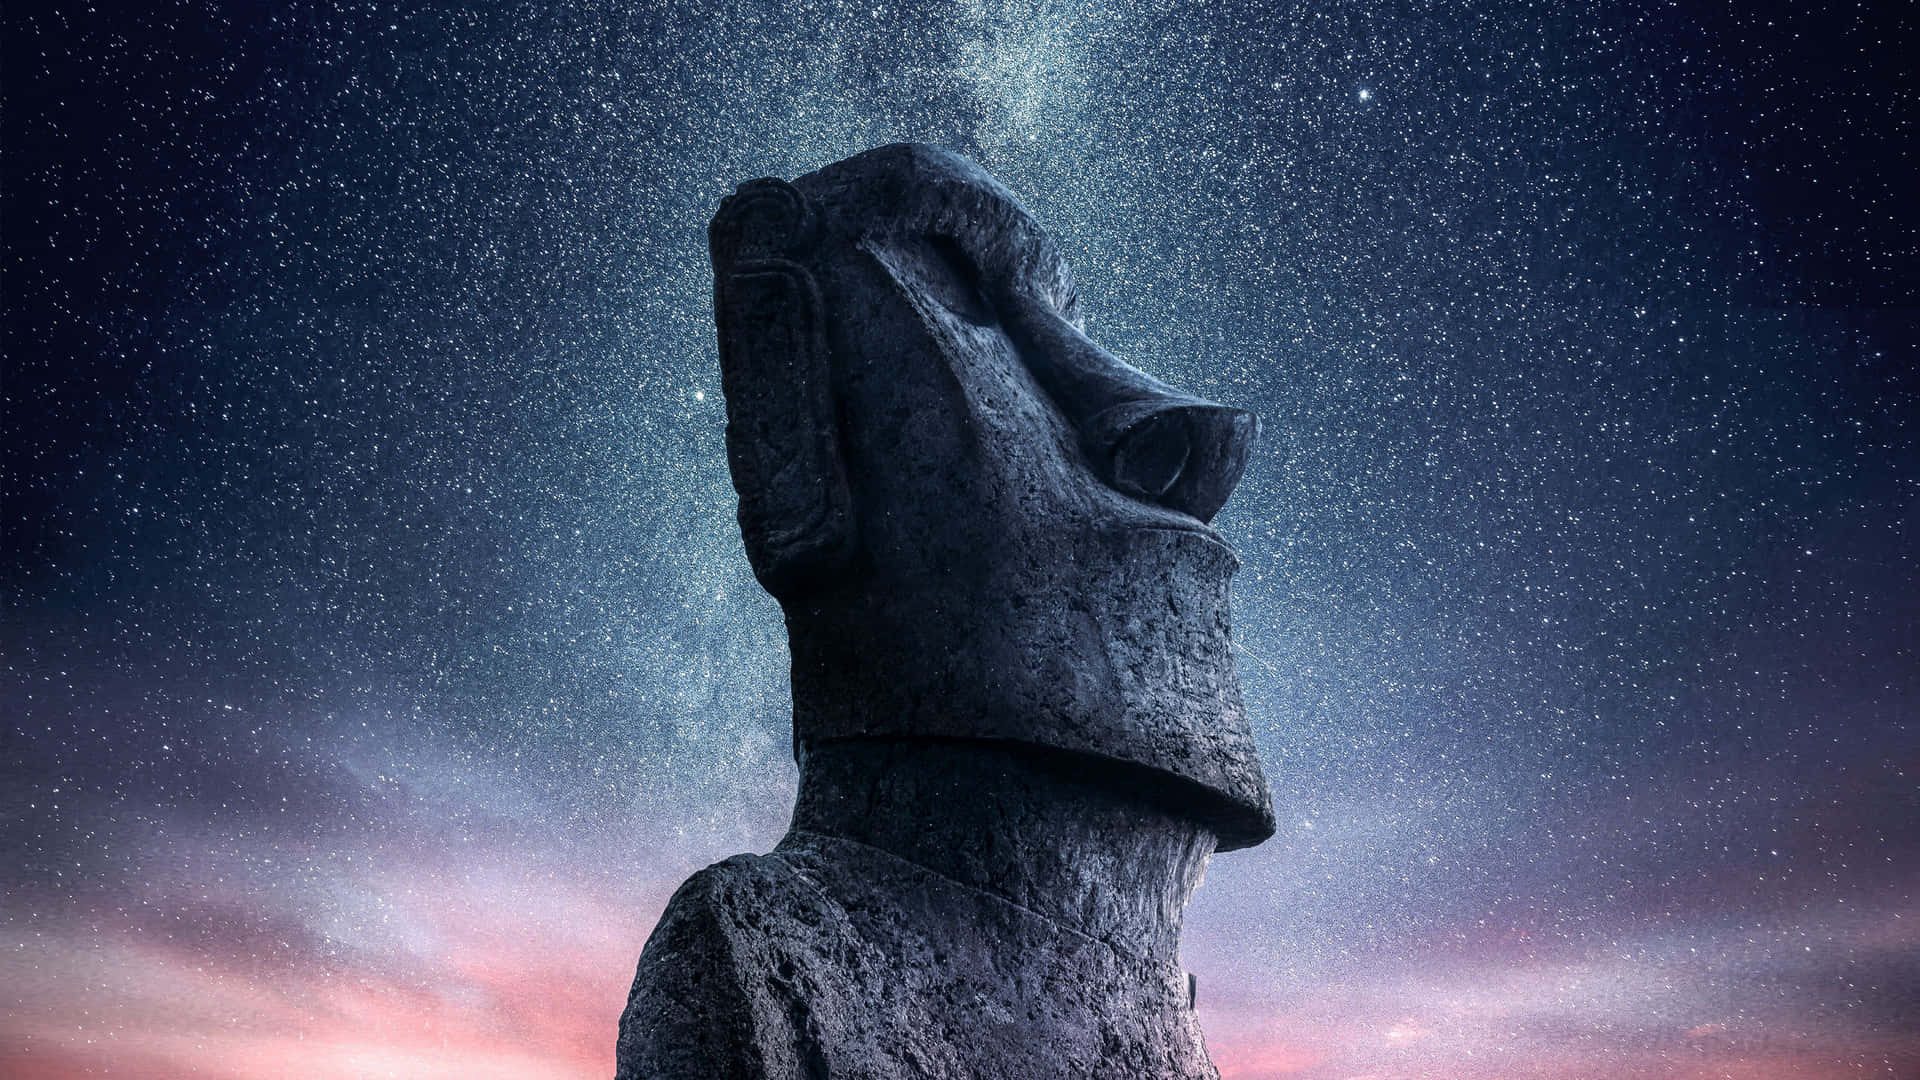 Moai Statue Against Sky Full Of Stars Wallpaper